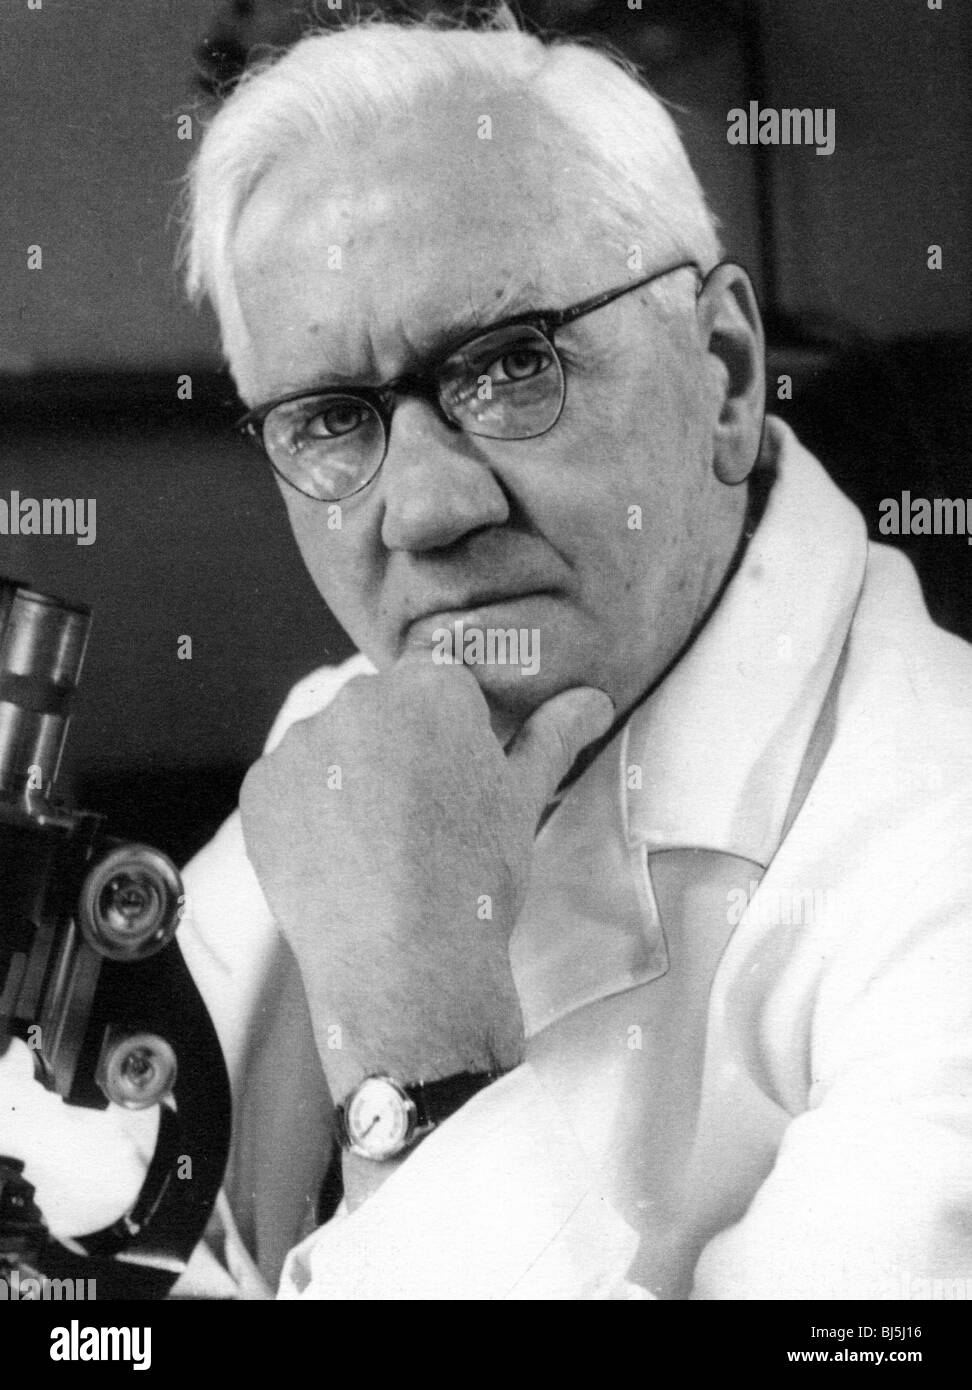 SIR Alexander Fleming - bactériologiste écossais et discovere de pénicilline (1881-1955) Banque D'Images